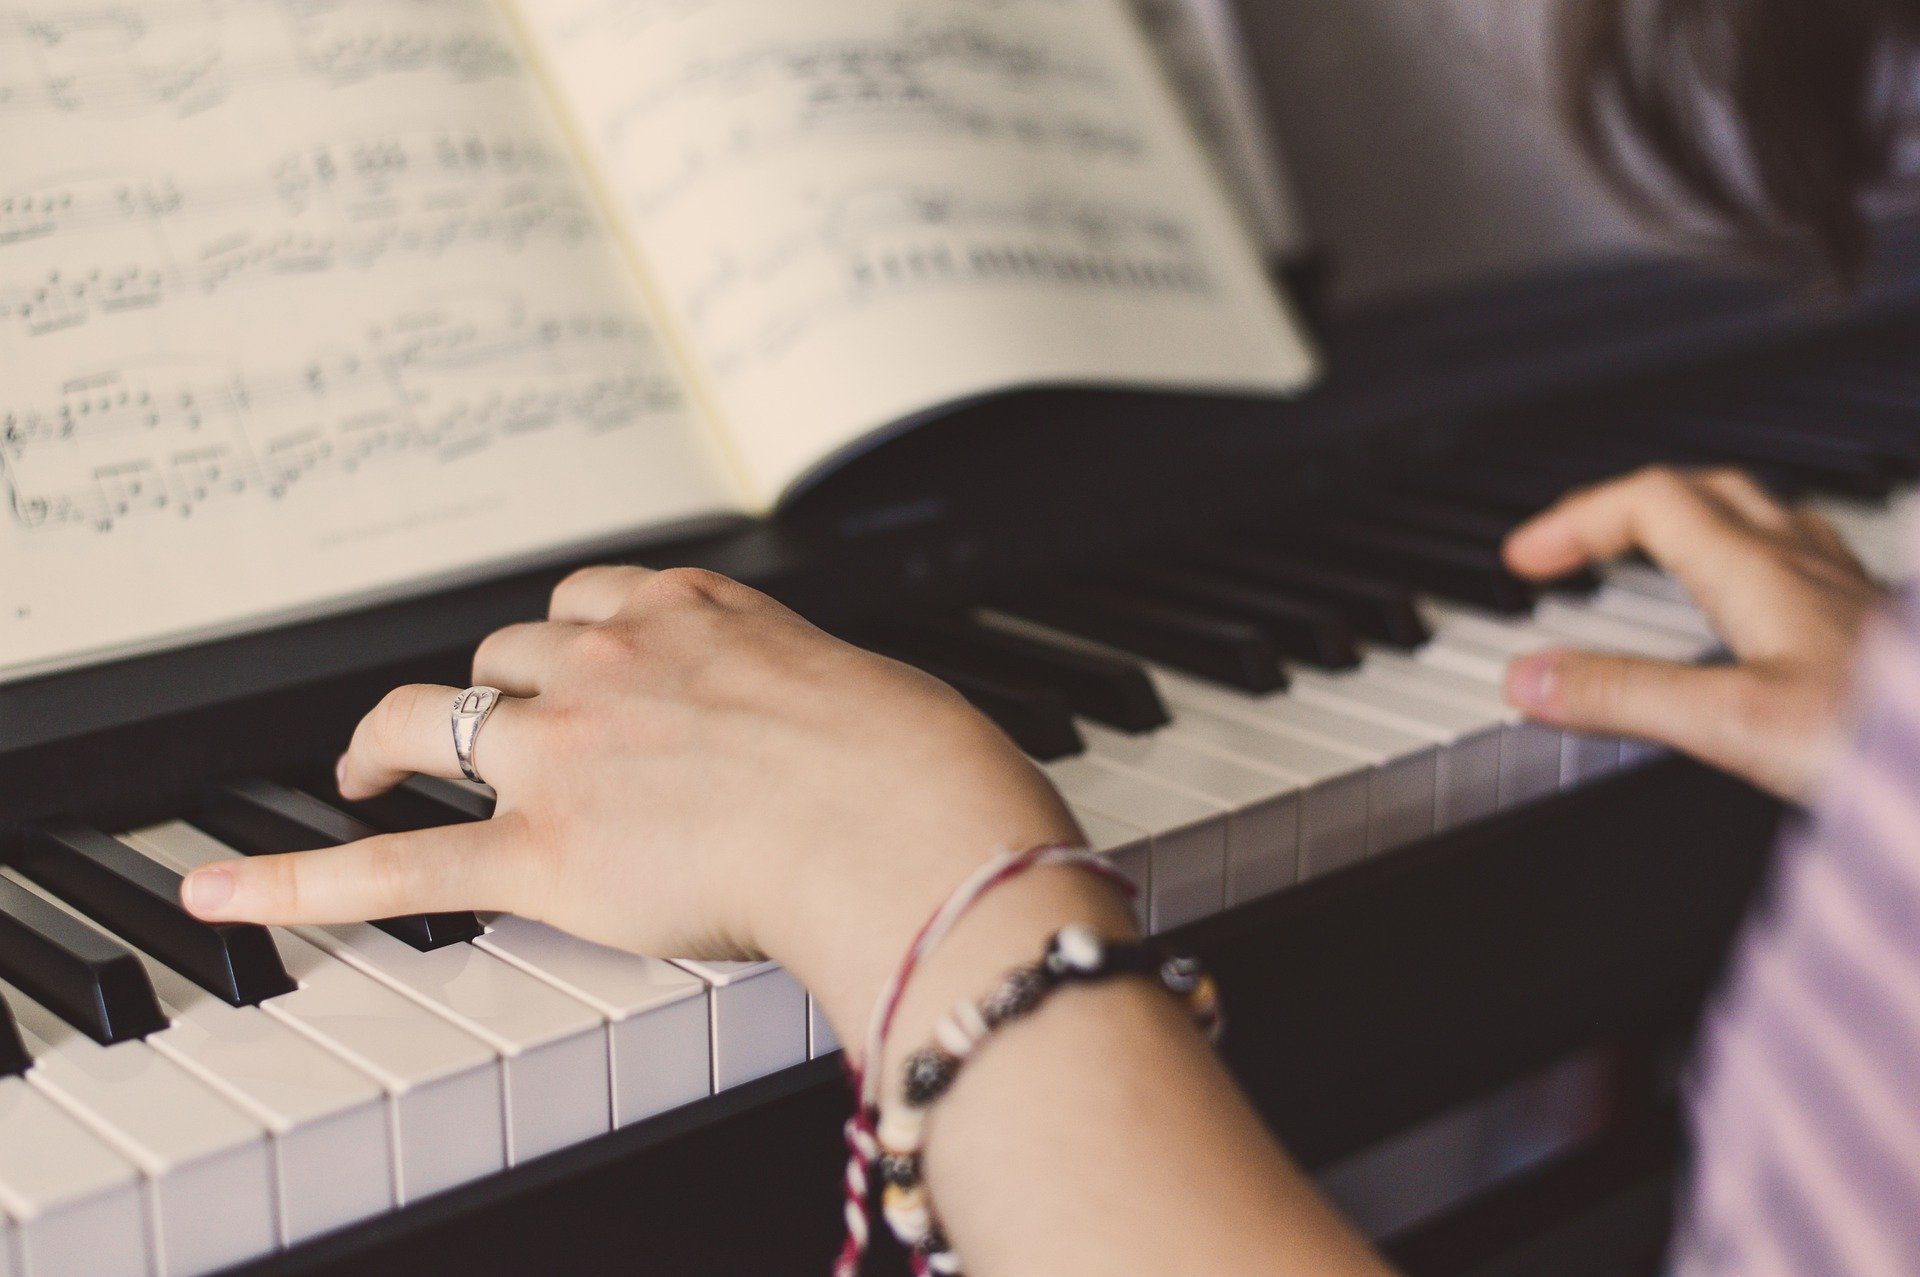 parilla Ciro estrecho Cómo elegir un piano para principiantes? Musicopolix tiene las claves |  Musicopolix